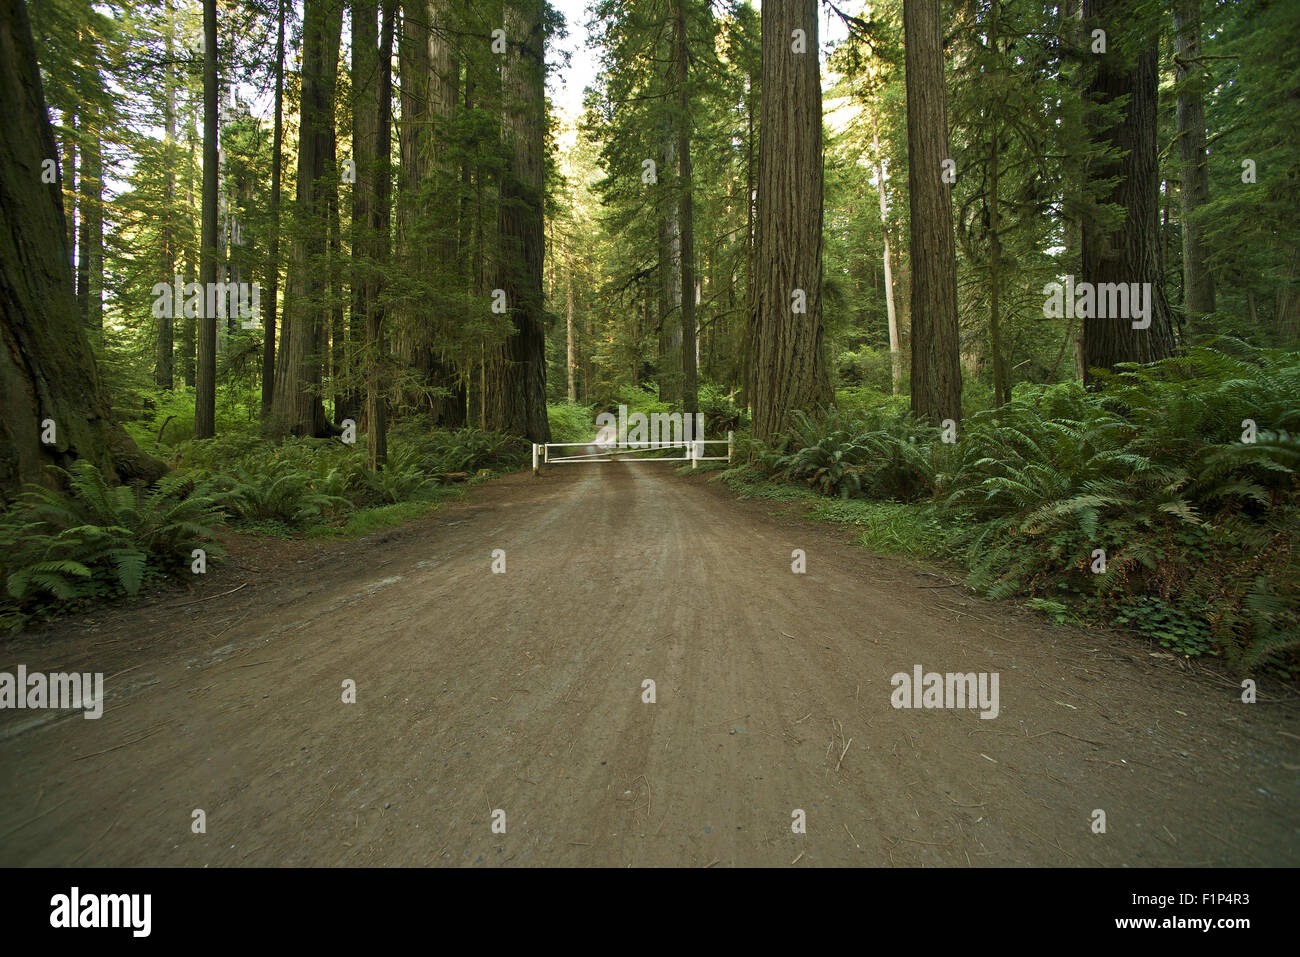 Redwood Forest Road. Redwood Forest National und State Parks Thema. Straße durch Redwoods. Natur-Fotografie-Sammlung. Stockfoto